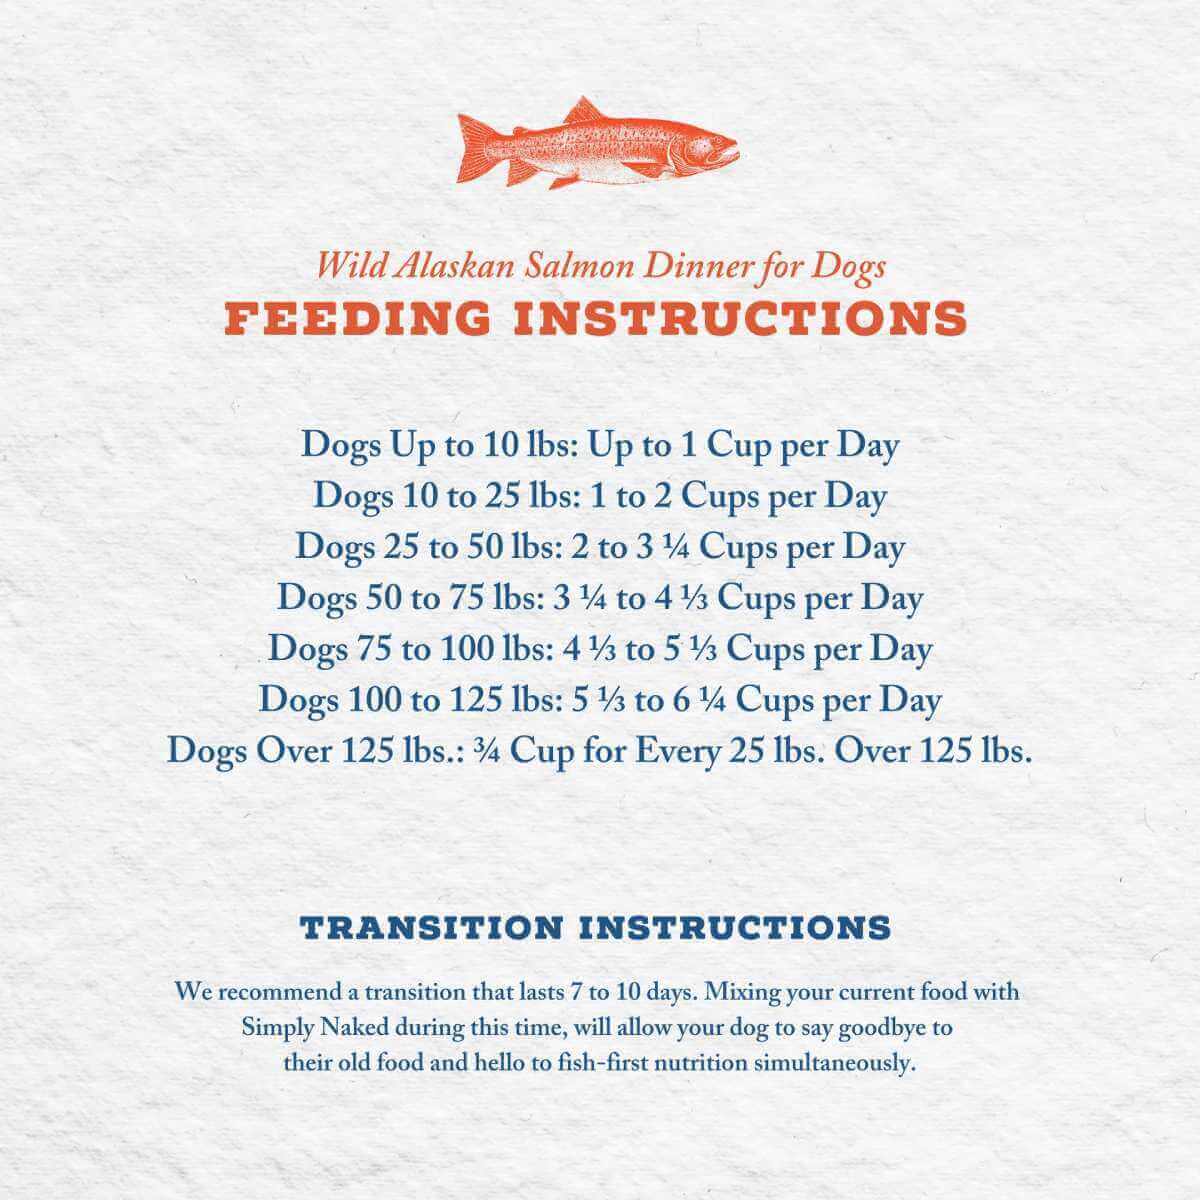 Wild Alaskan Salmon Dinner for Dogs Feeding Instructions